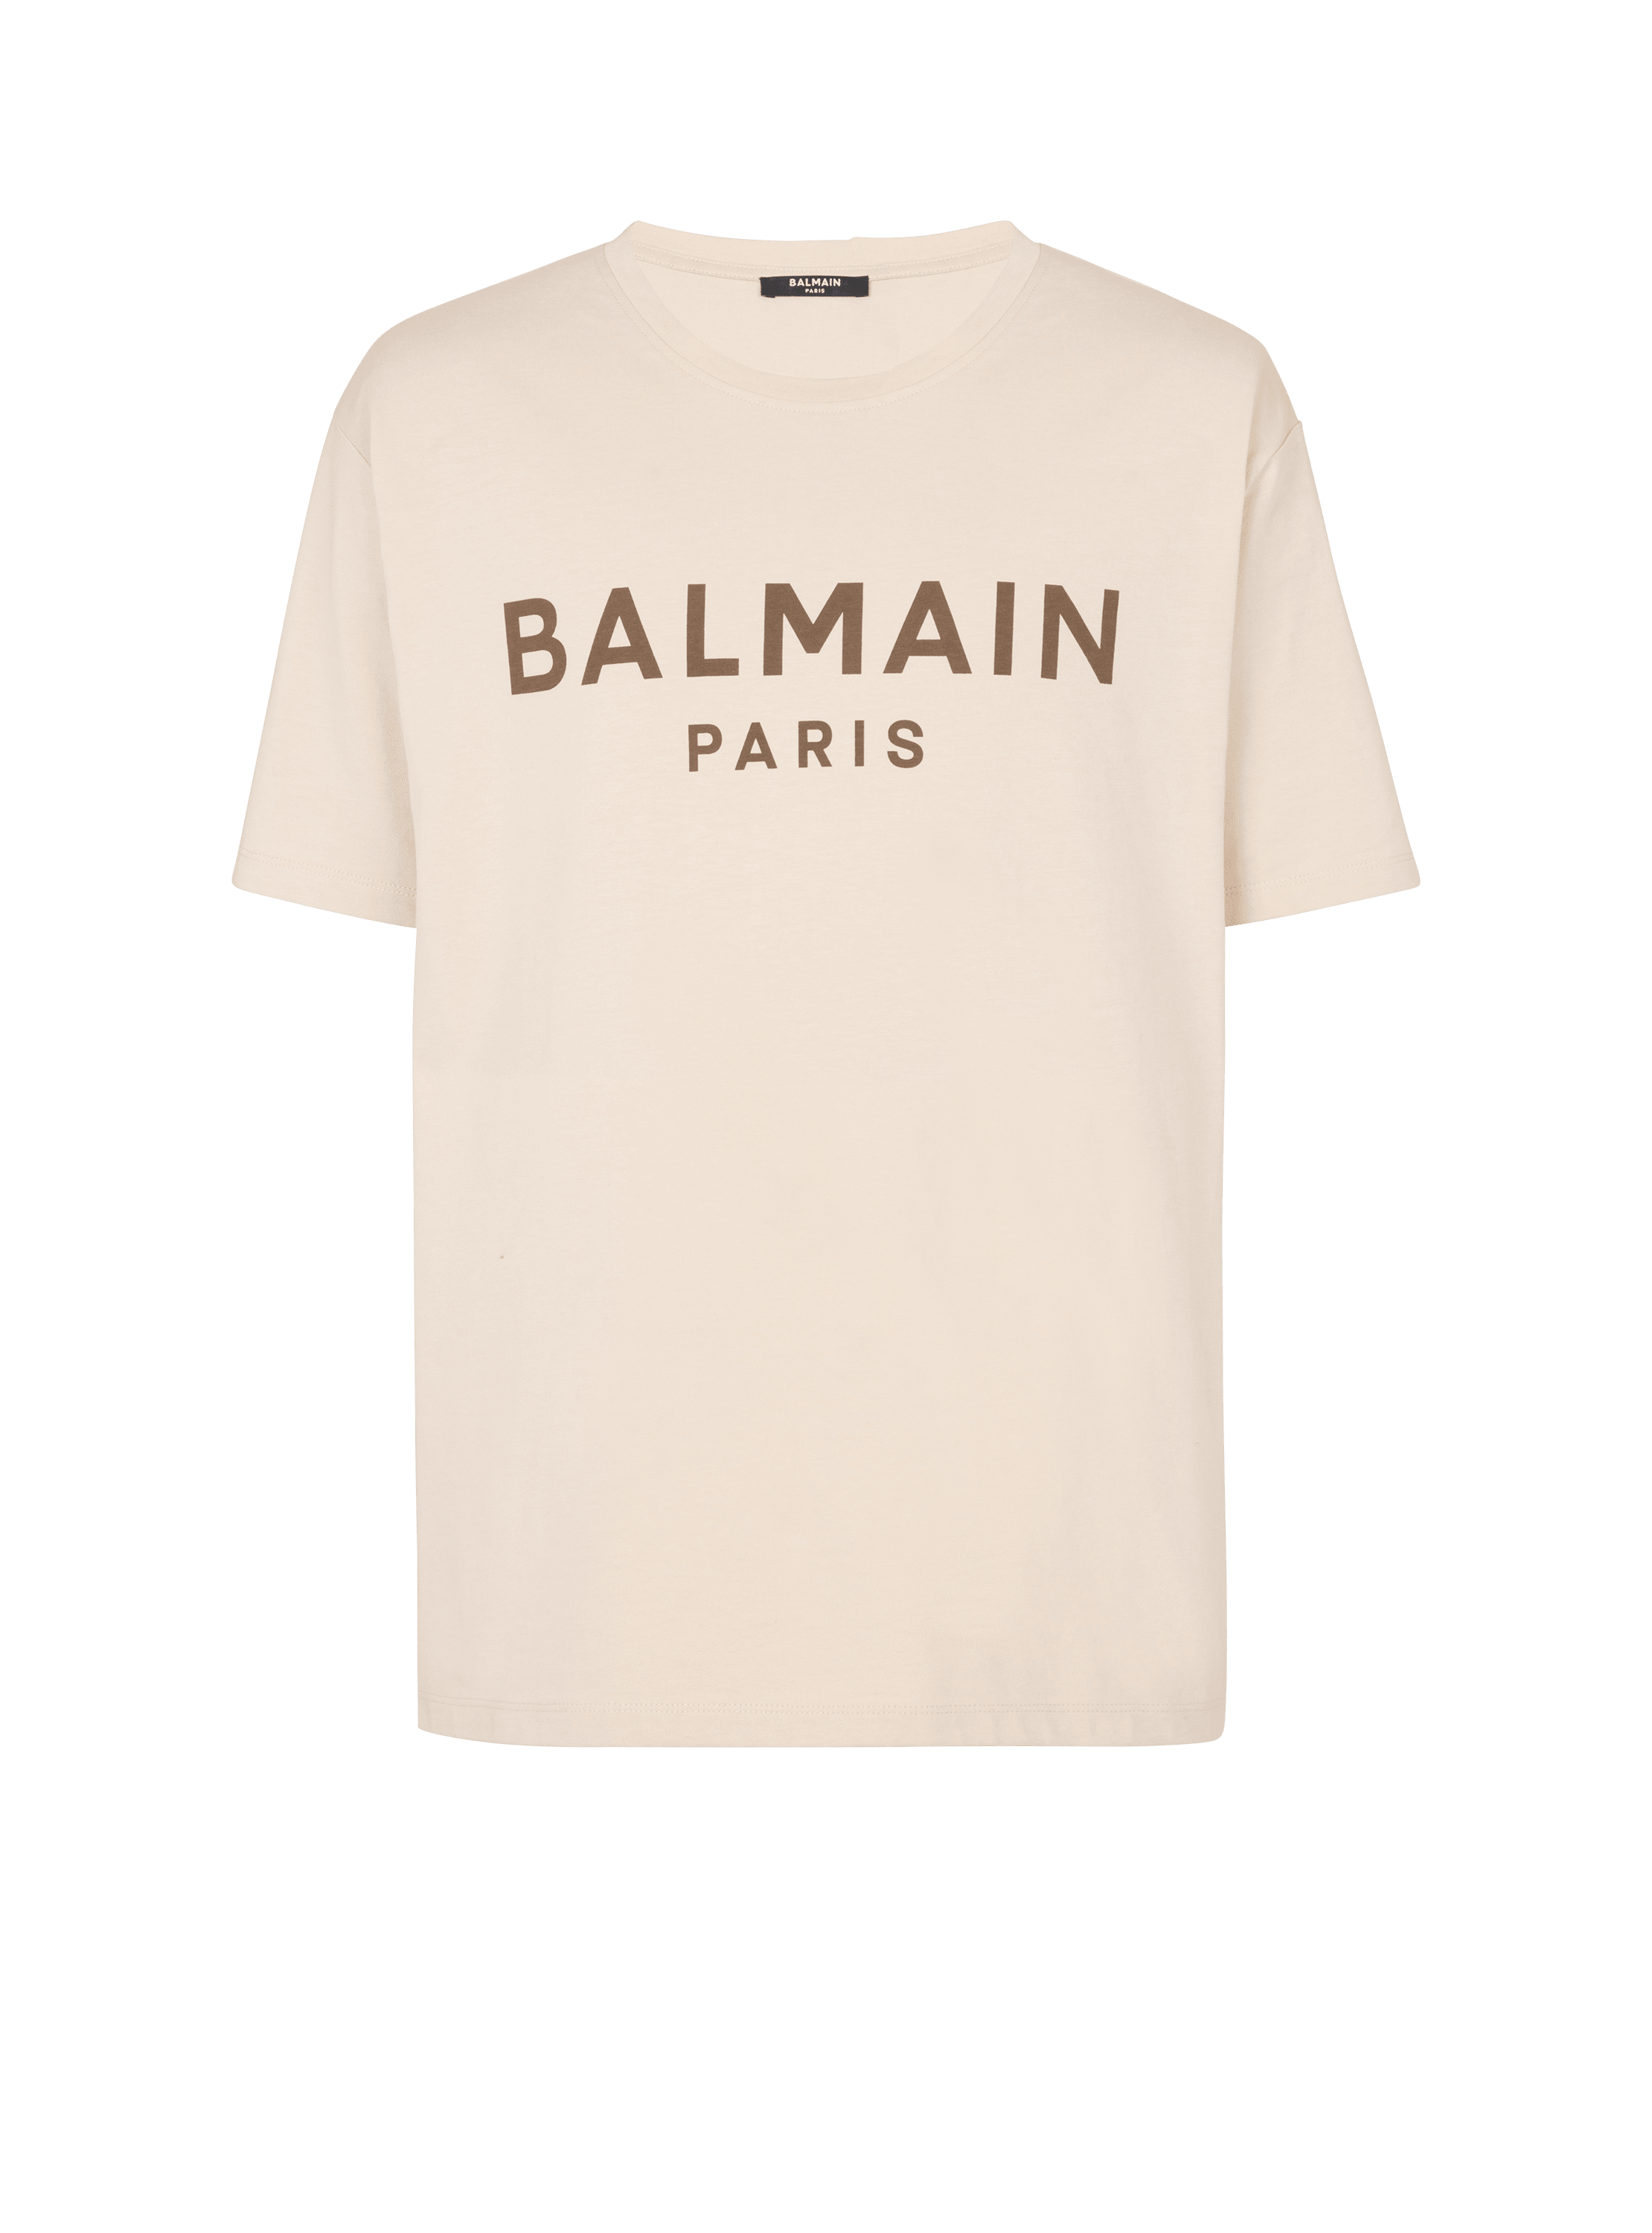 T-shirt à imprimé Balmain Paris, beige, hi-res